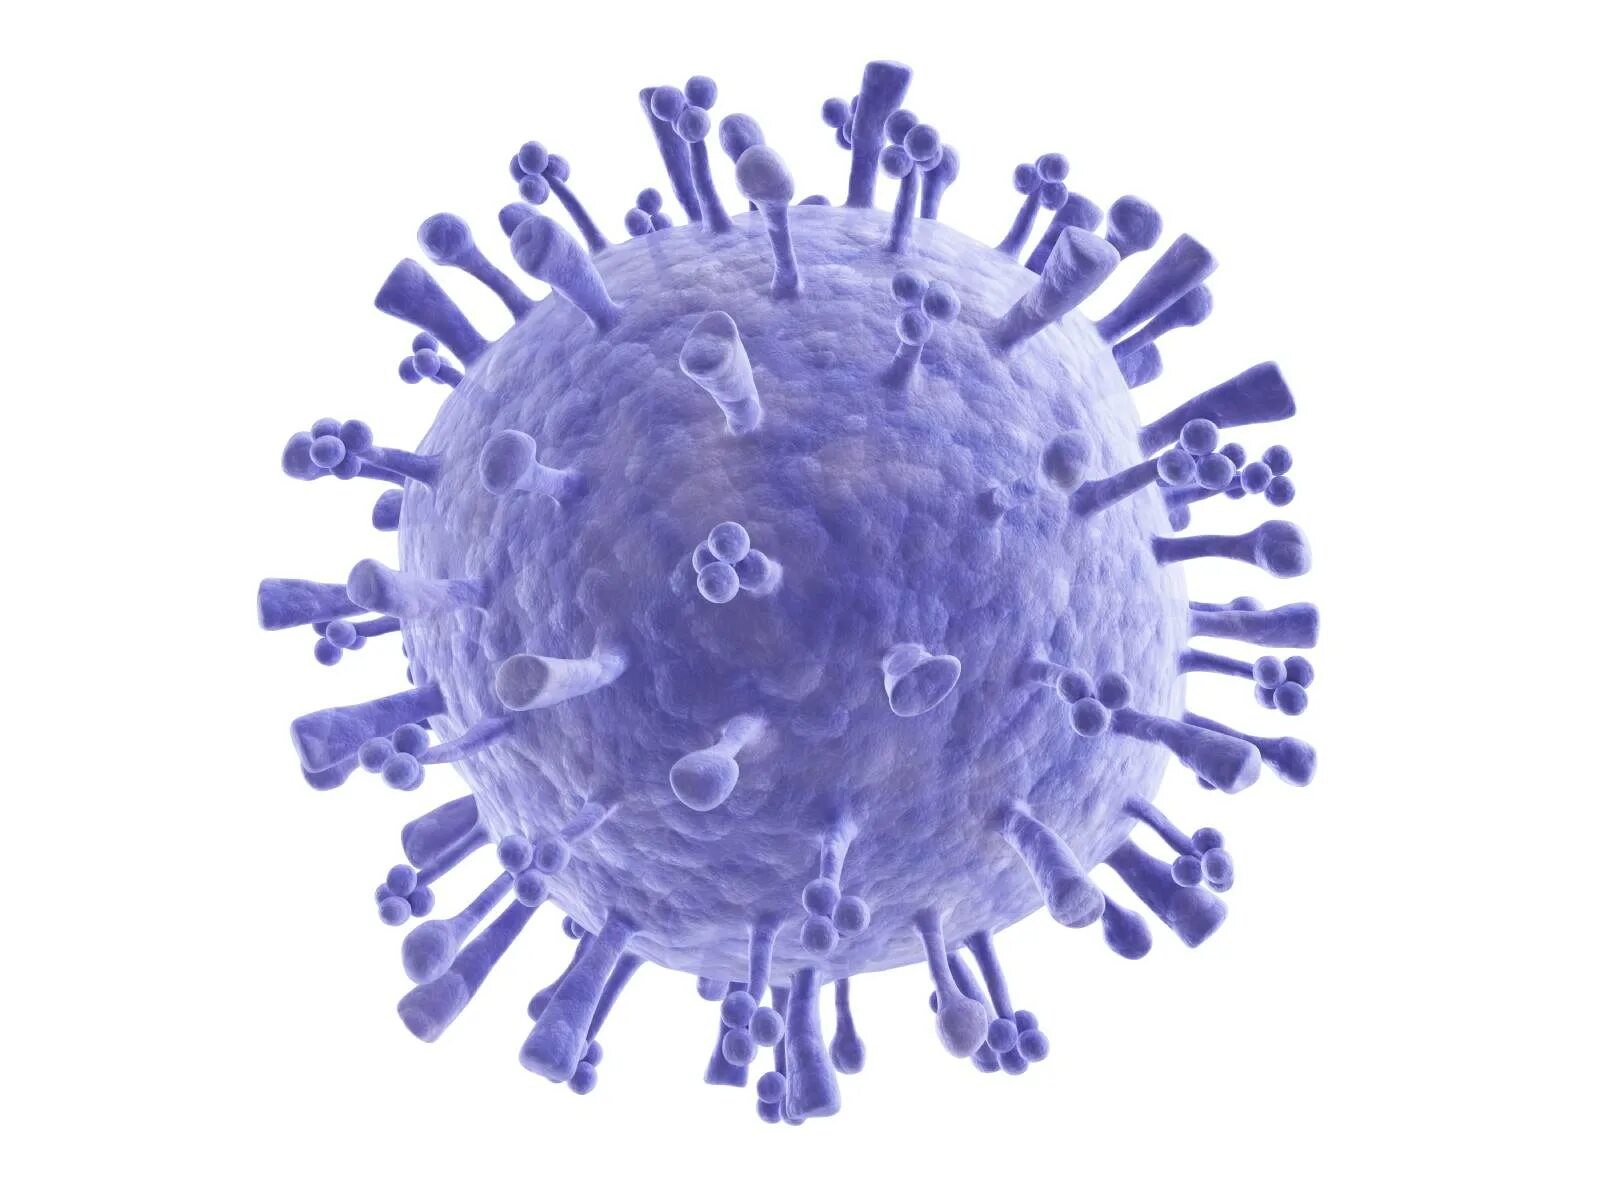 Орви клетка. H2n2 вирус. Вирус гриппа h1n1. Coronavirus бактерия. Коронавирус молекула.